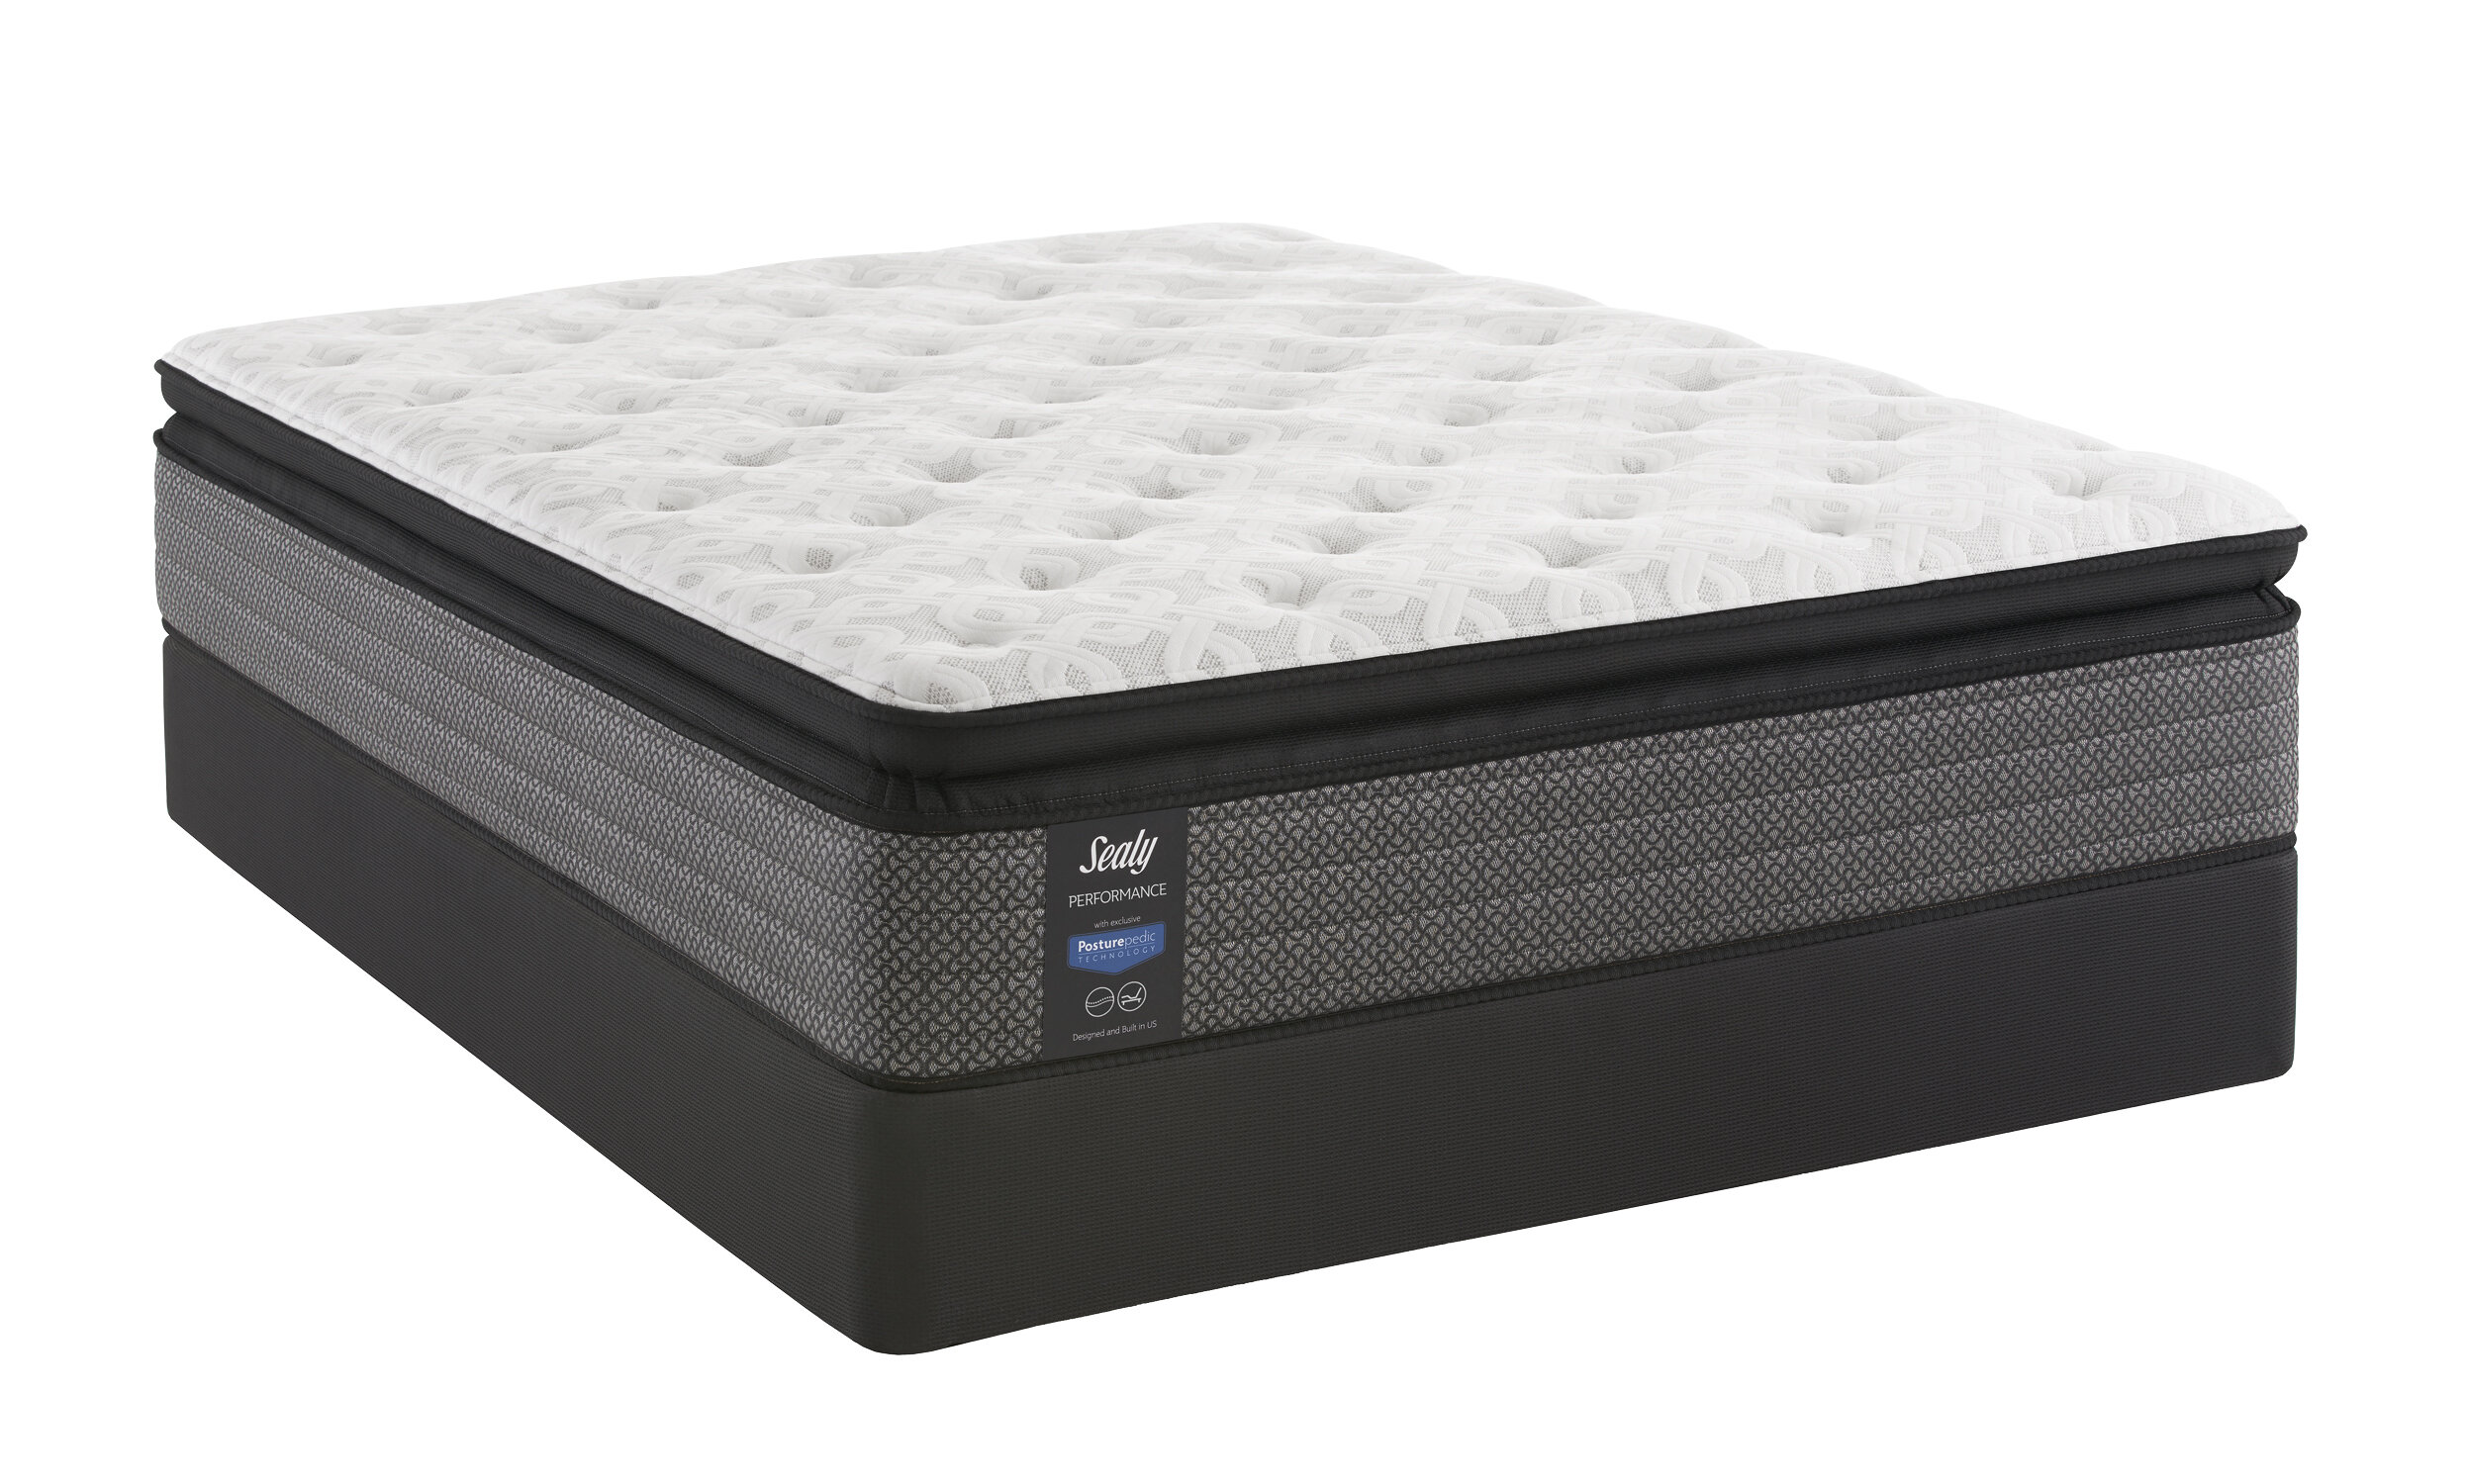 sertarest cool loft mattress pad reviews